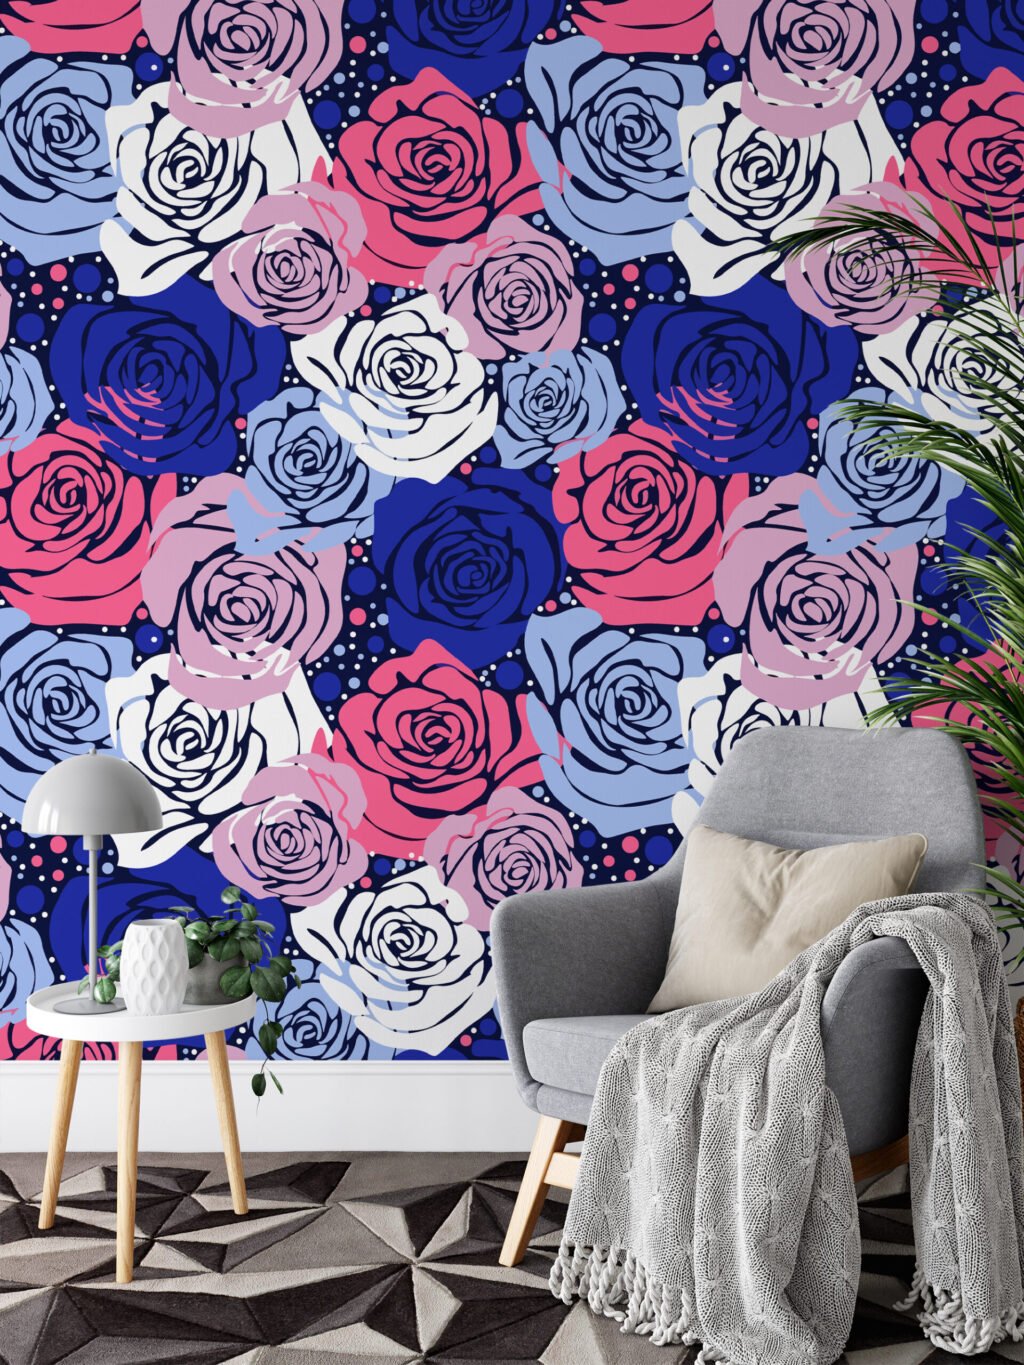 Renkli Abstract Gül Desenli Duvar Kağıdı, Cesur Mavi & Pembe Çiçek Tasarımı 3D Duvar Posteri Çiçekli Duvar Kağıtları 2